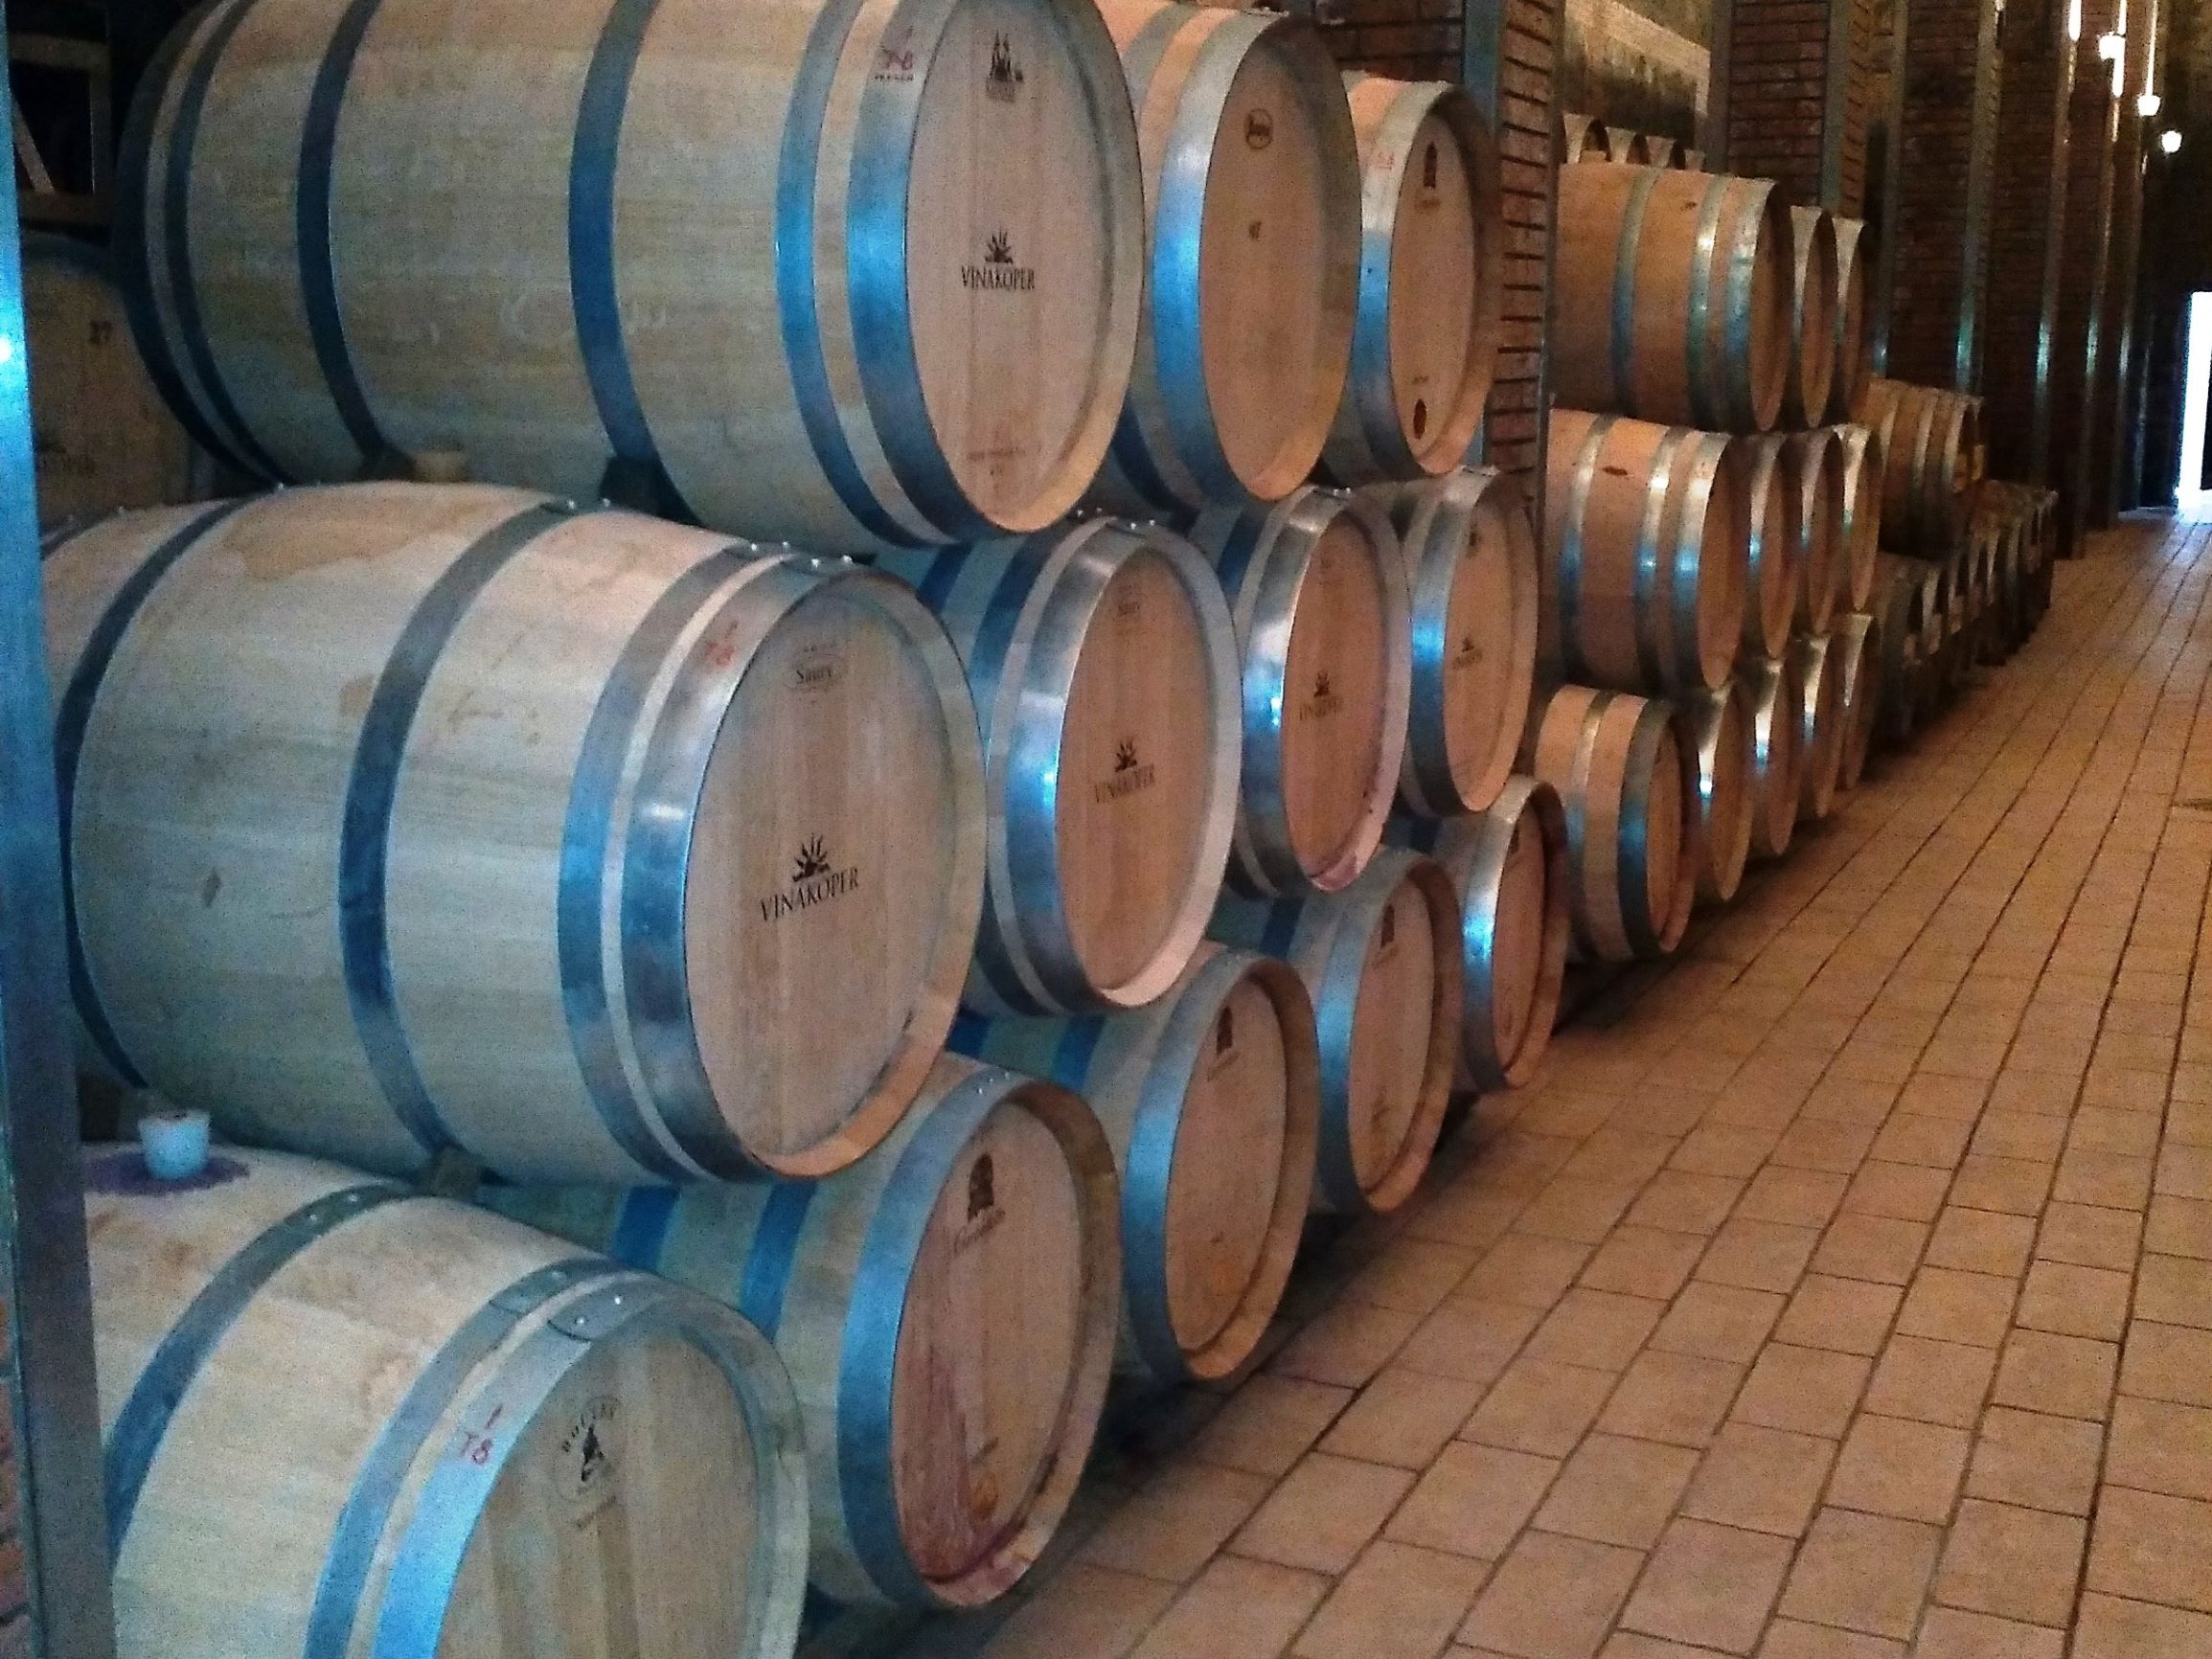 Agencija vinarje poziva k pravočasni predložitvi dokazil o krizni destilaciji vina